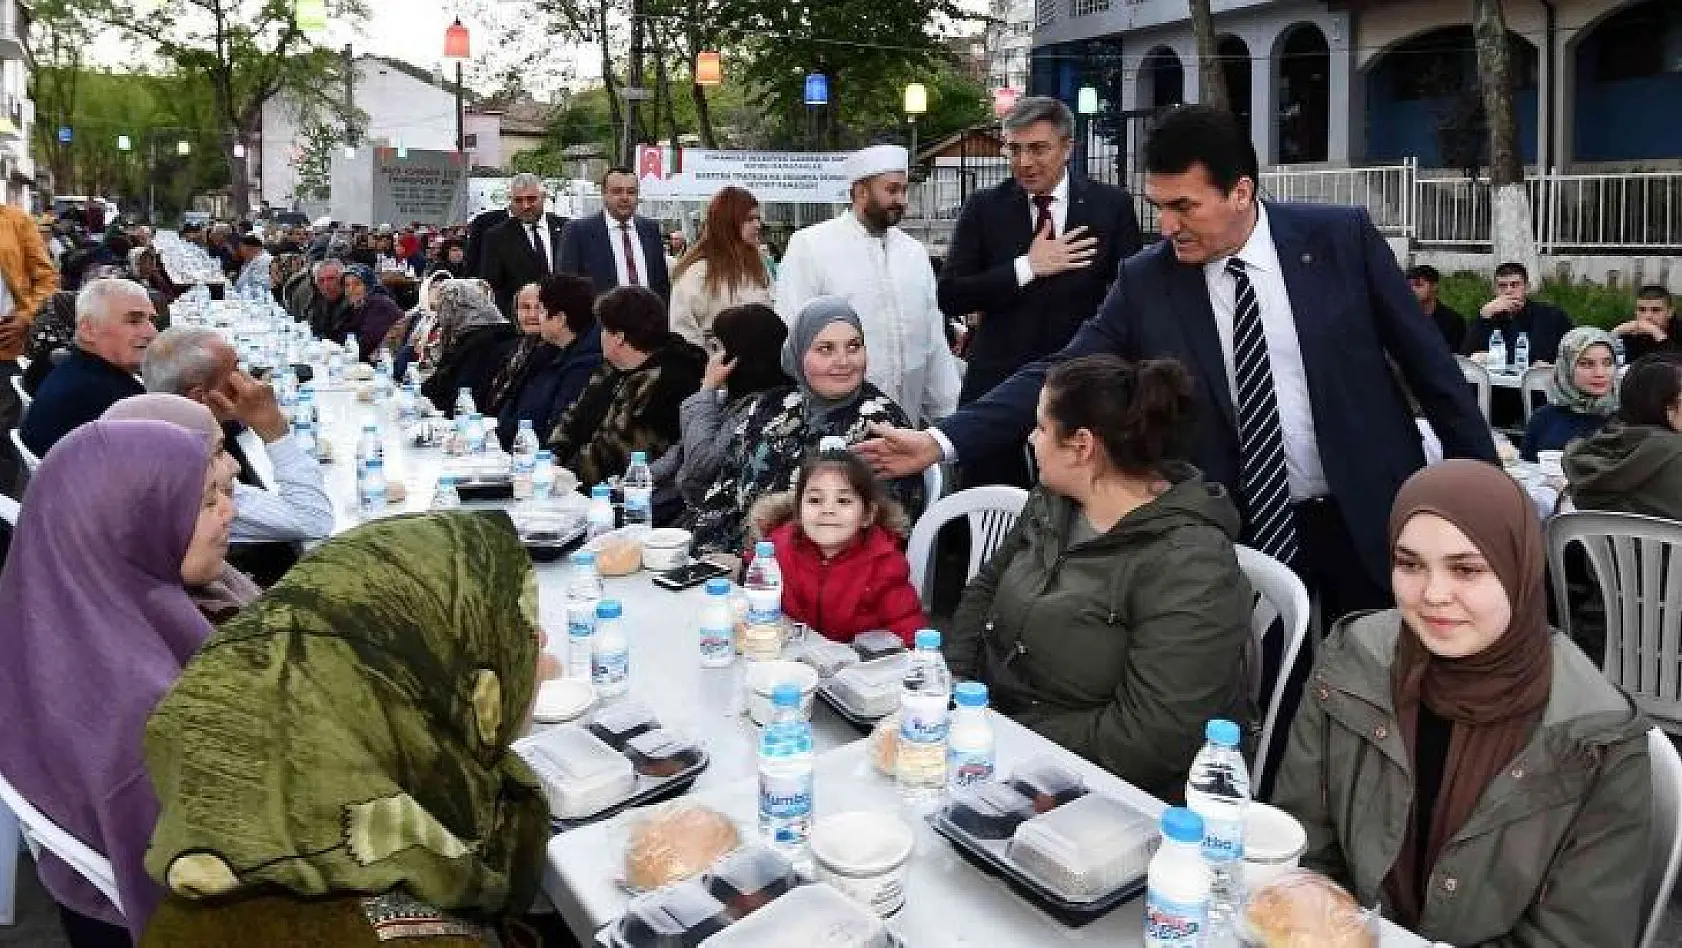 Ramazanın bereketi Osmangazi ile Balkanlar'a taştı